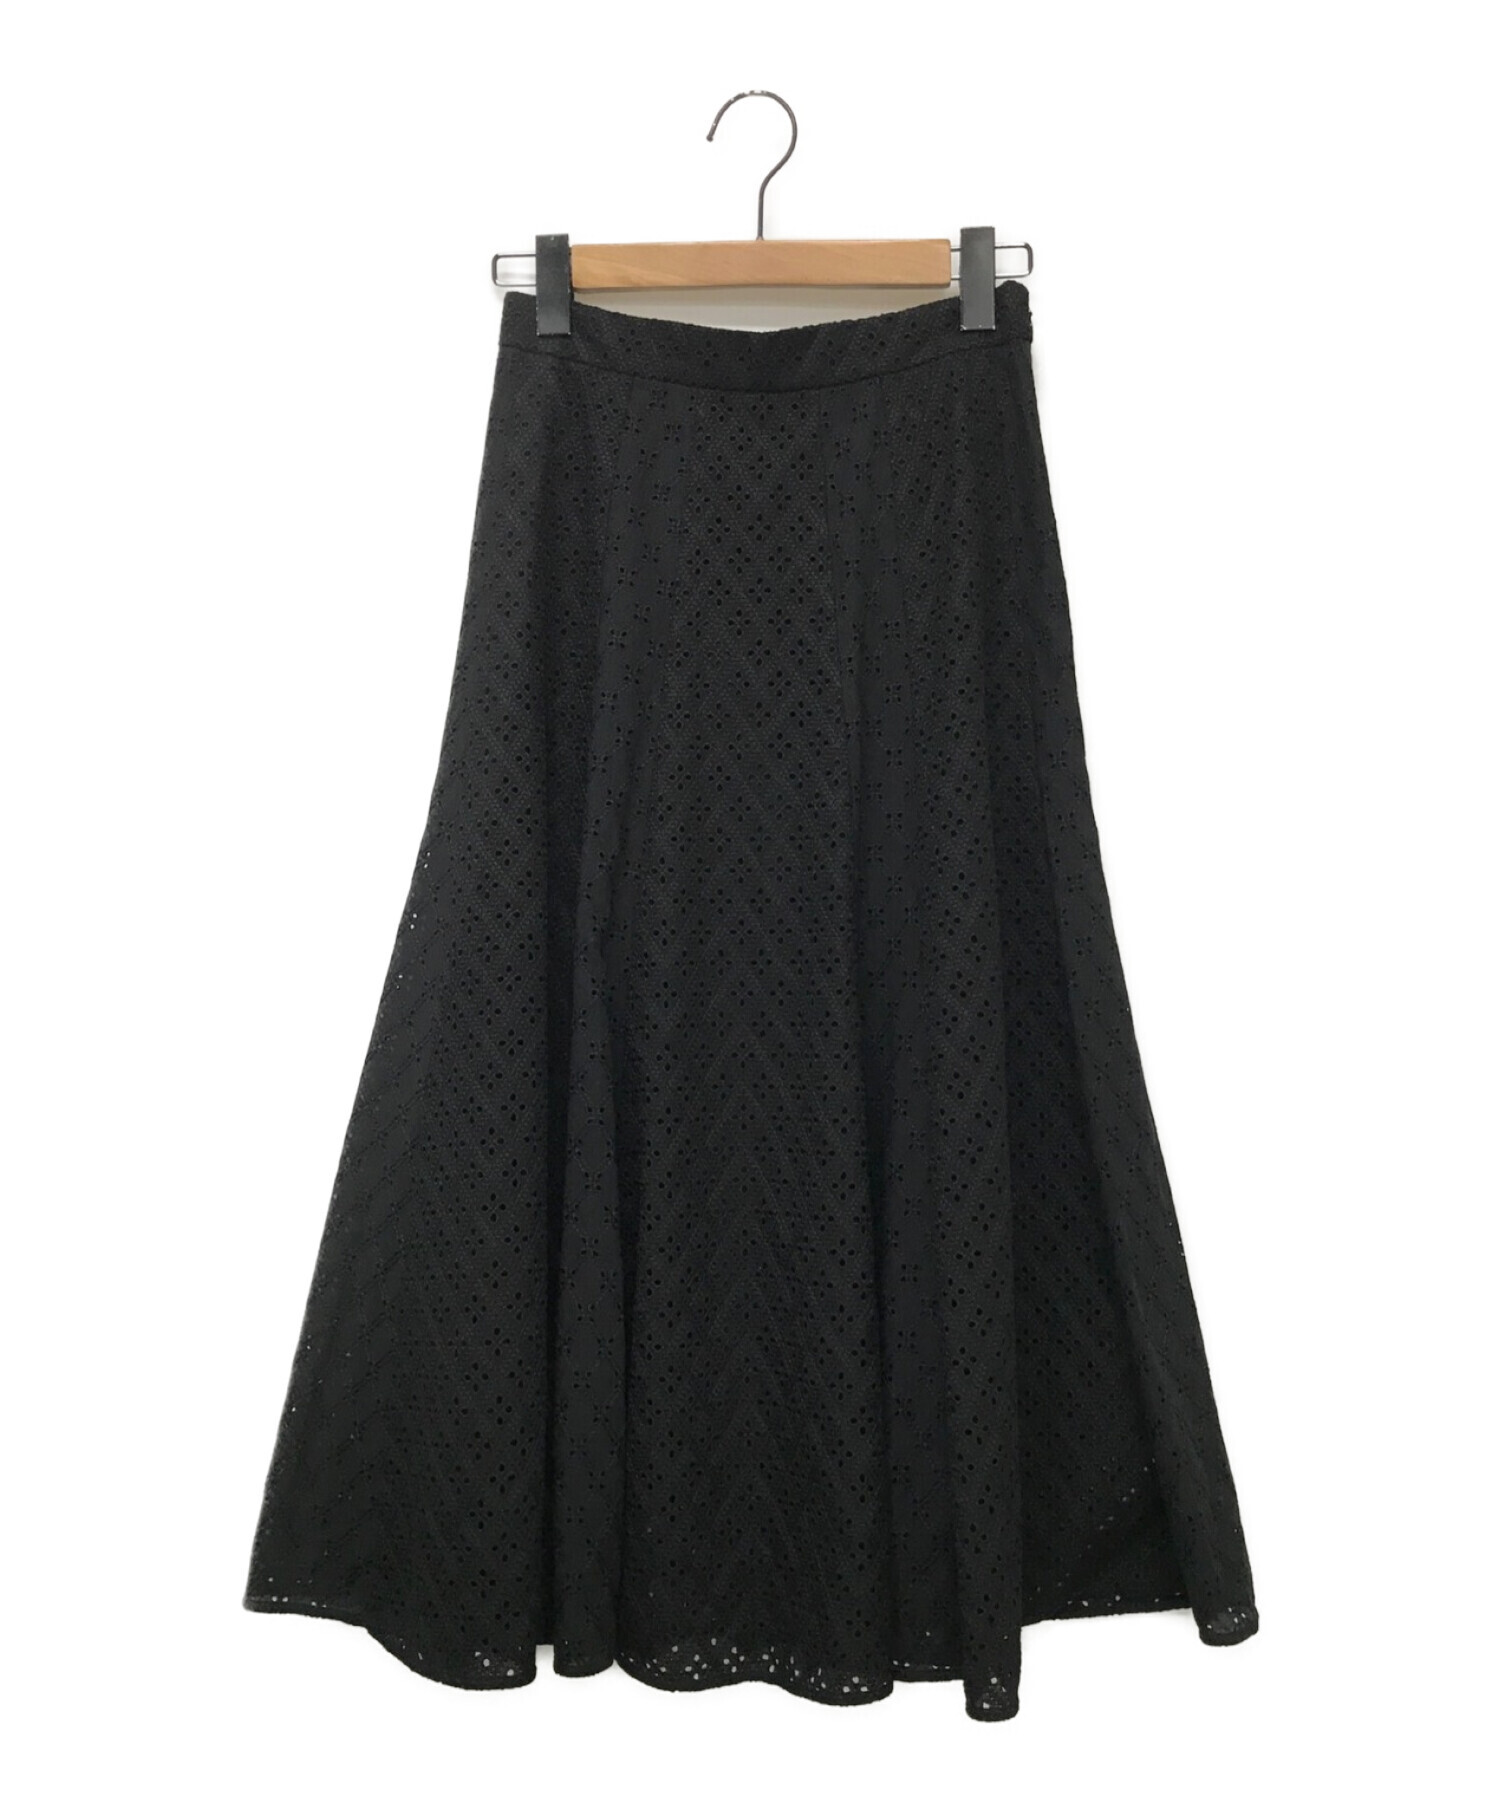 ANAYI (アナイ) タイルレースフレアスカート ブラック サイズ:36